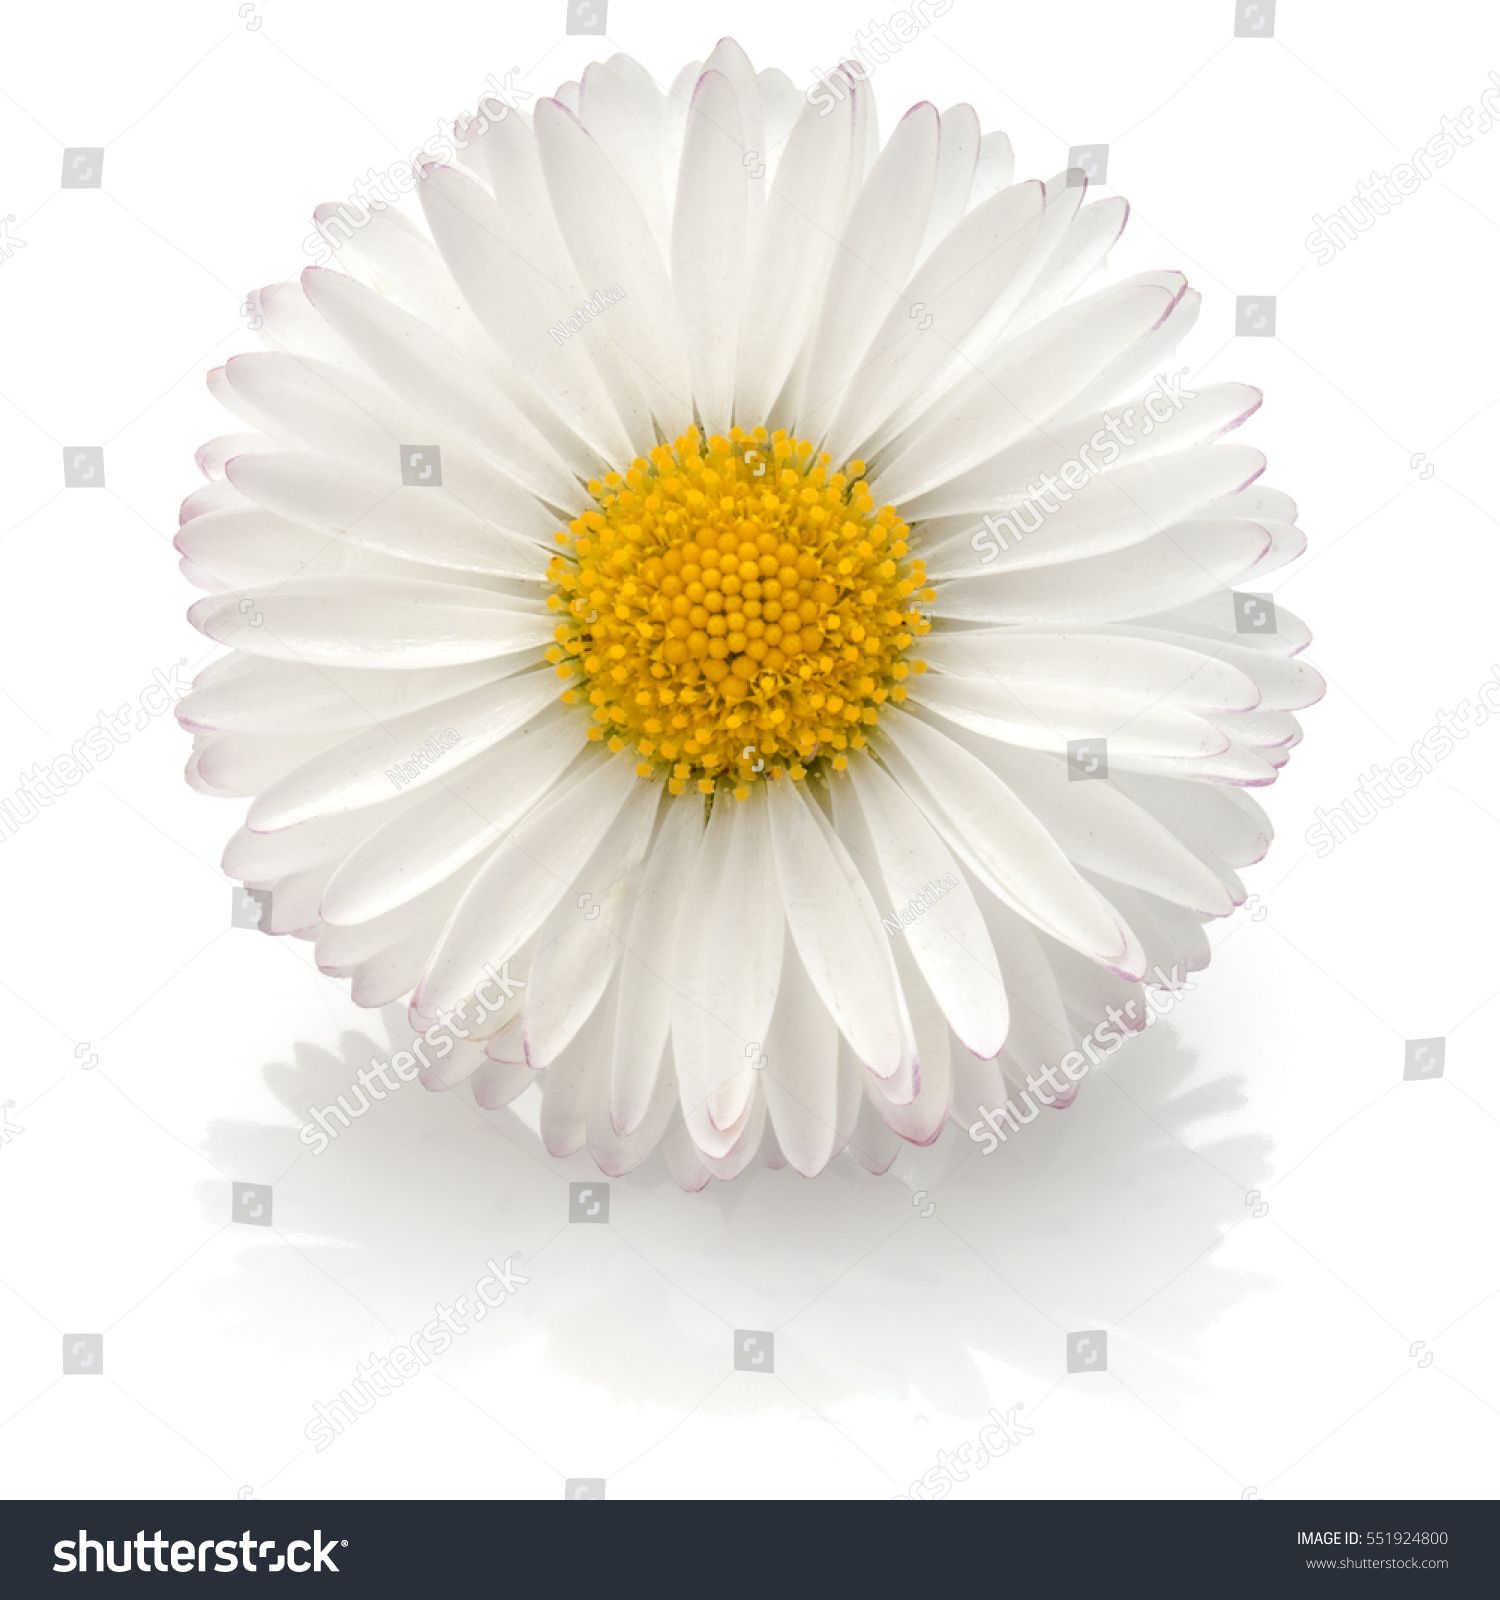 Single daisy photo